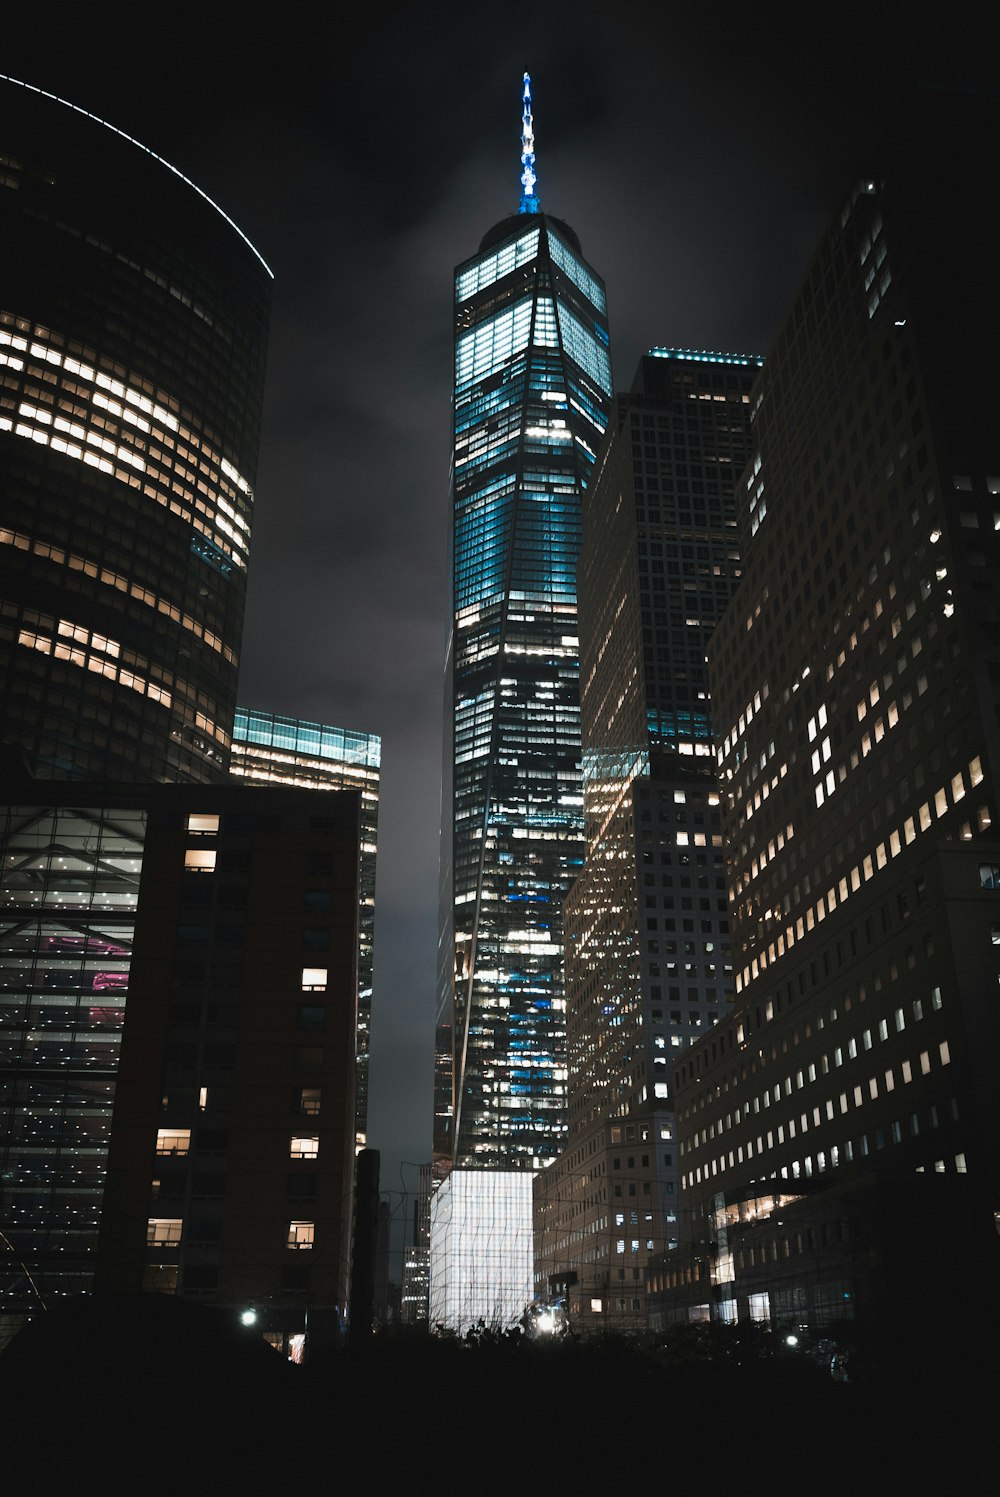 야간에는 세계 무역 센터 건물 중 한 곳